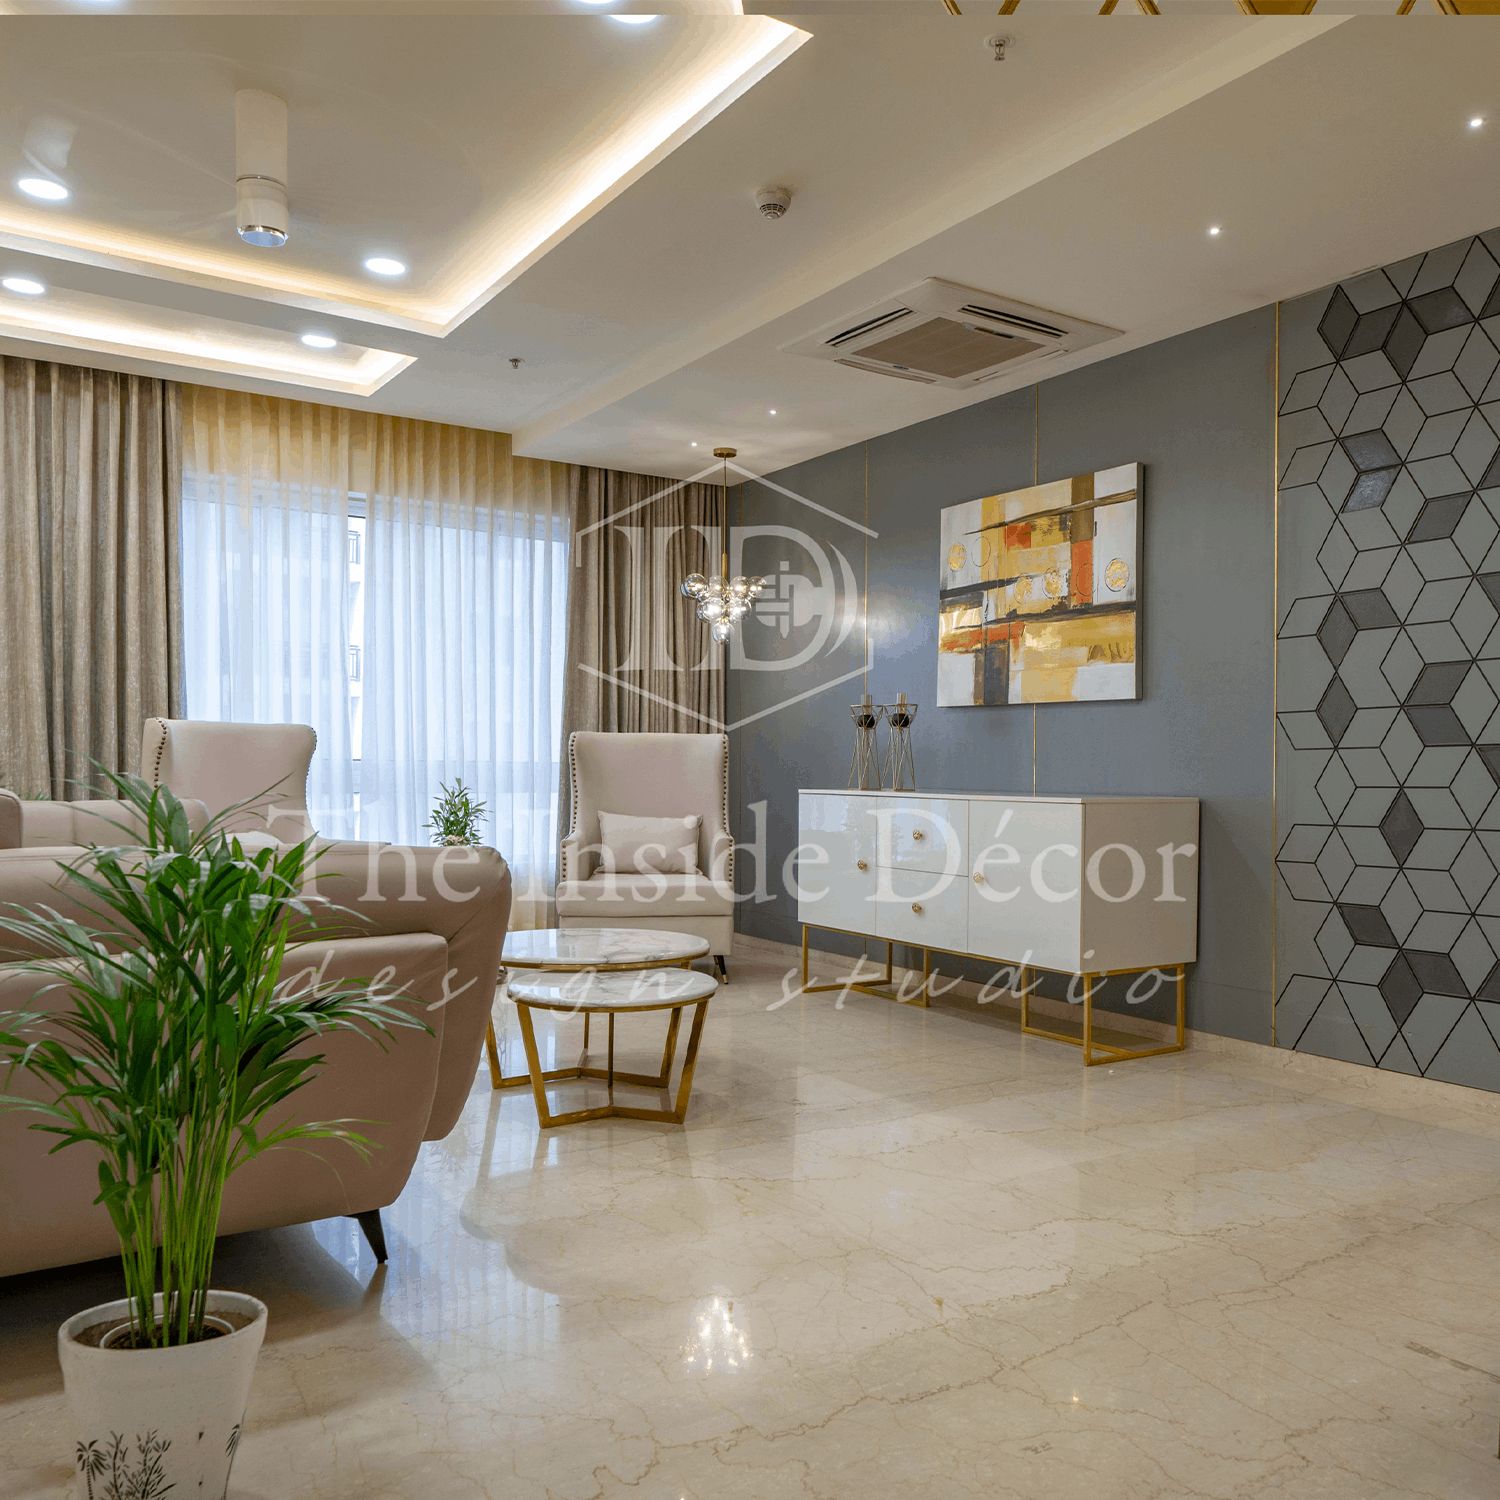 Interior design/ decoration